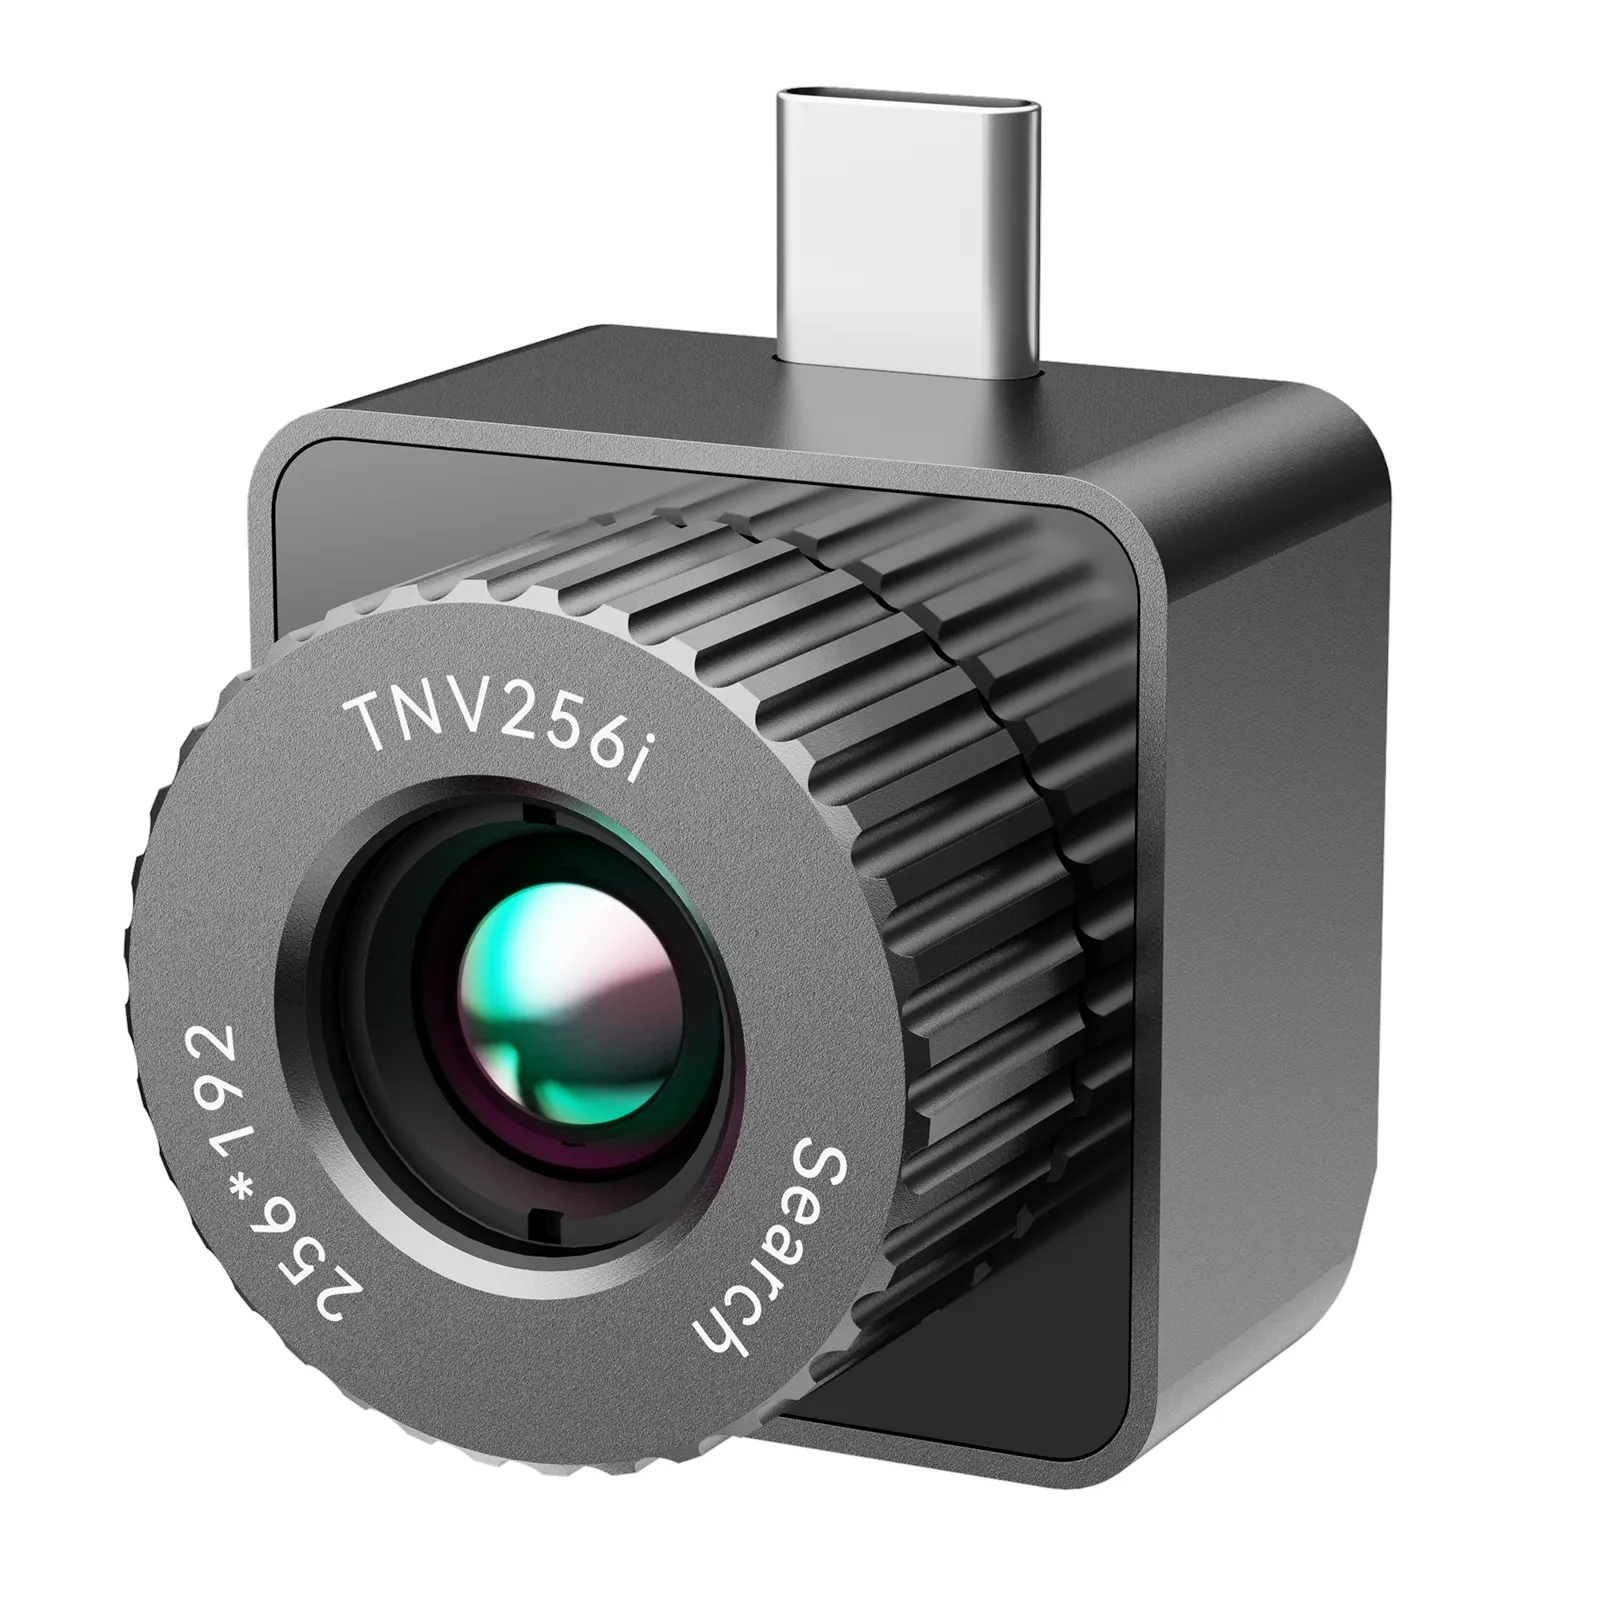 Mileseey TNV256i mini termocamera T-Recon Scout 256x192 (25Hz) termografia monoculare Smartphone Android